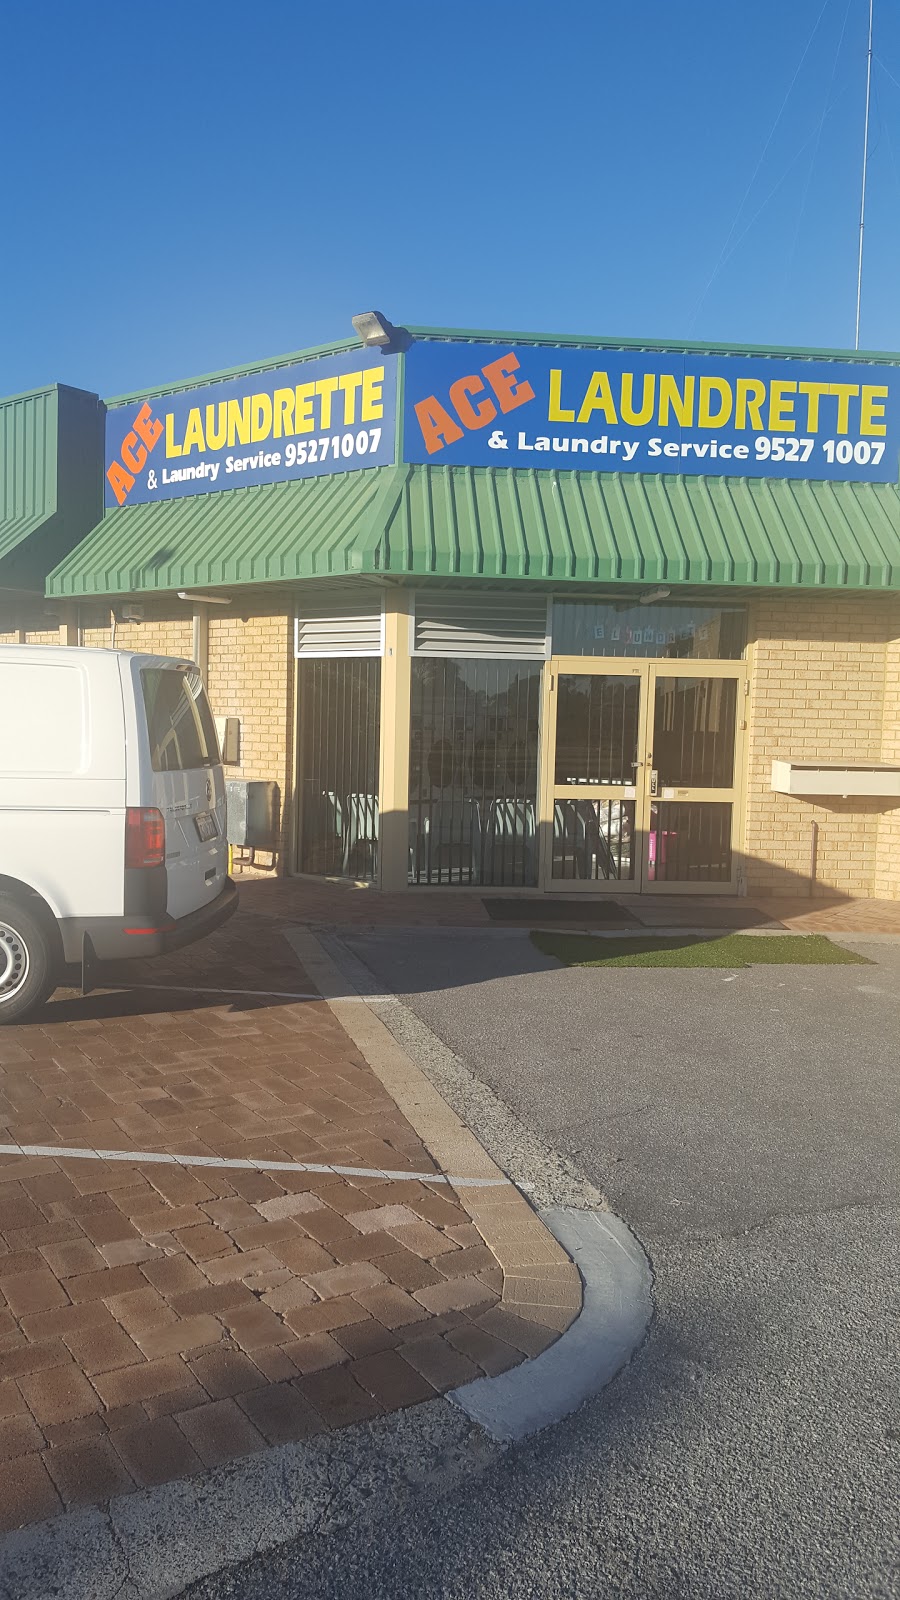 Ace Laundrette & Laundry Services Rockingham | laundry | 1/4 Leach Cres, Rockingham WA 6168, Australia | 0895271007 OR +61 8 9527 1007